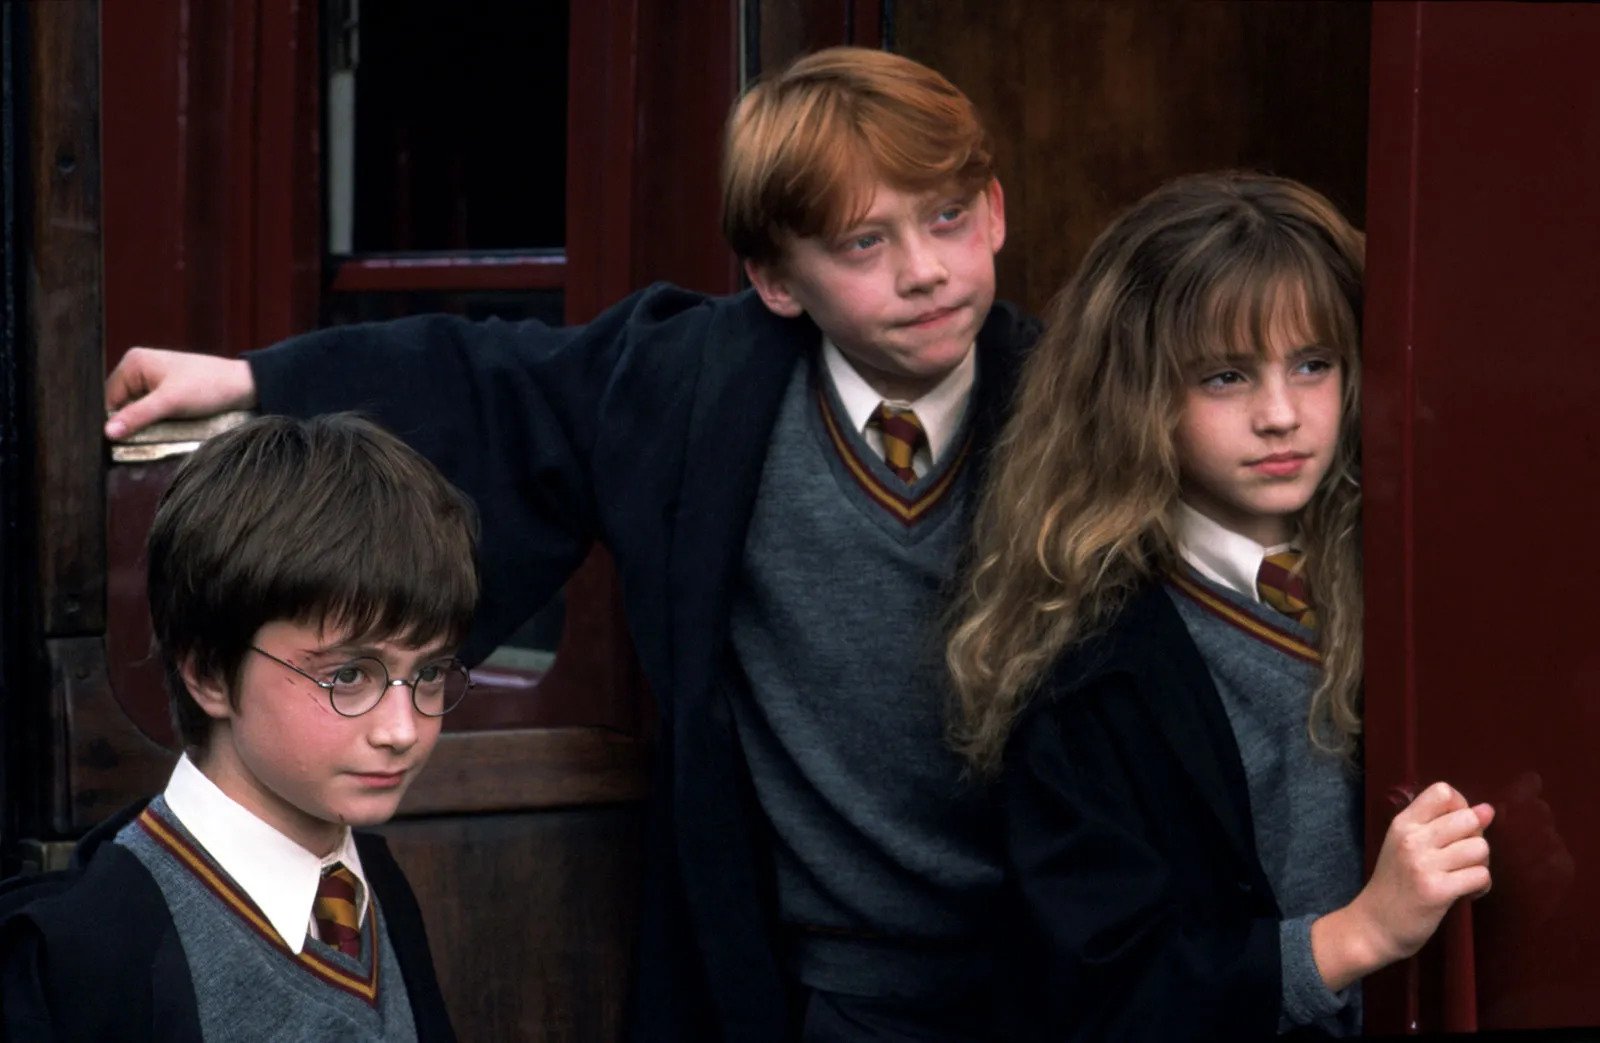 SKANDAL U VELIKOJ BRITANIJI: Serijal o Hariju Poteru izostavljen sa liste 70 najboljih knjiga objavljenih za vrijeme Elizabete II